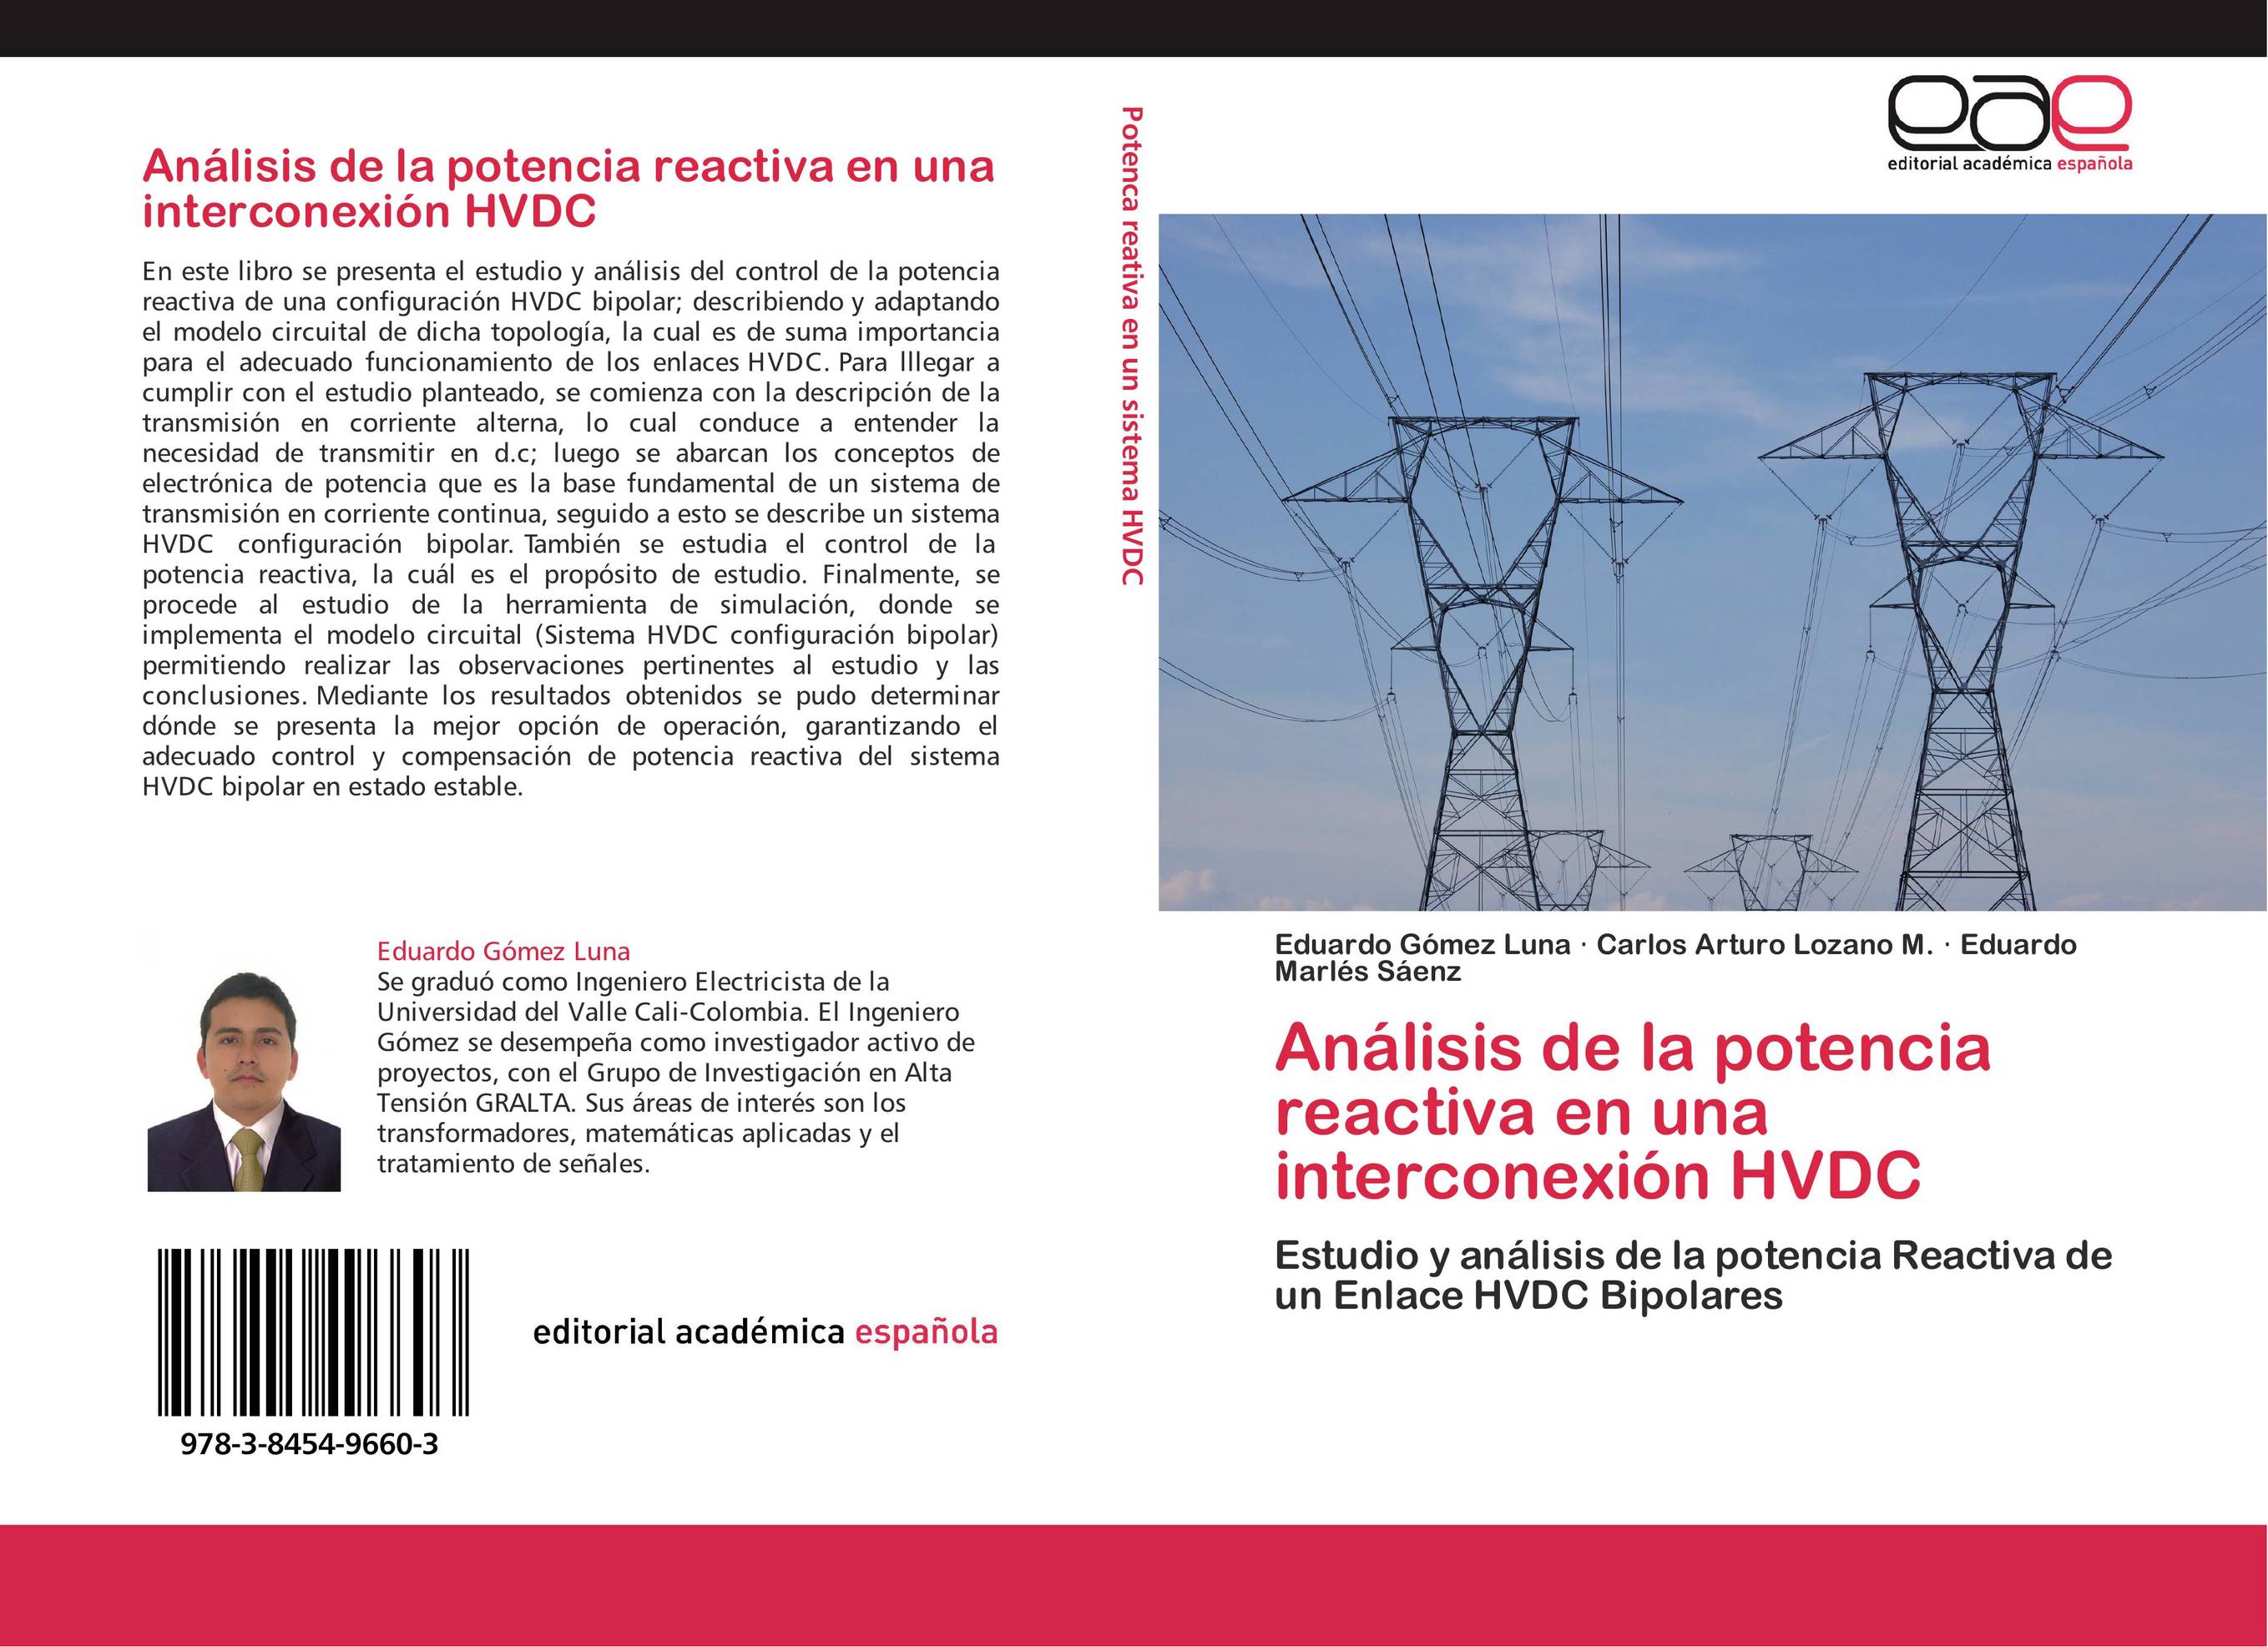 Análisis de la potencia reactiva en una interconexión HVDC